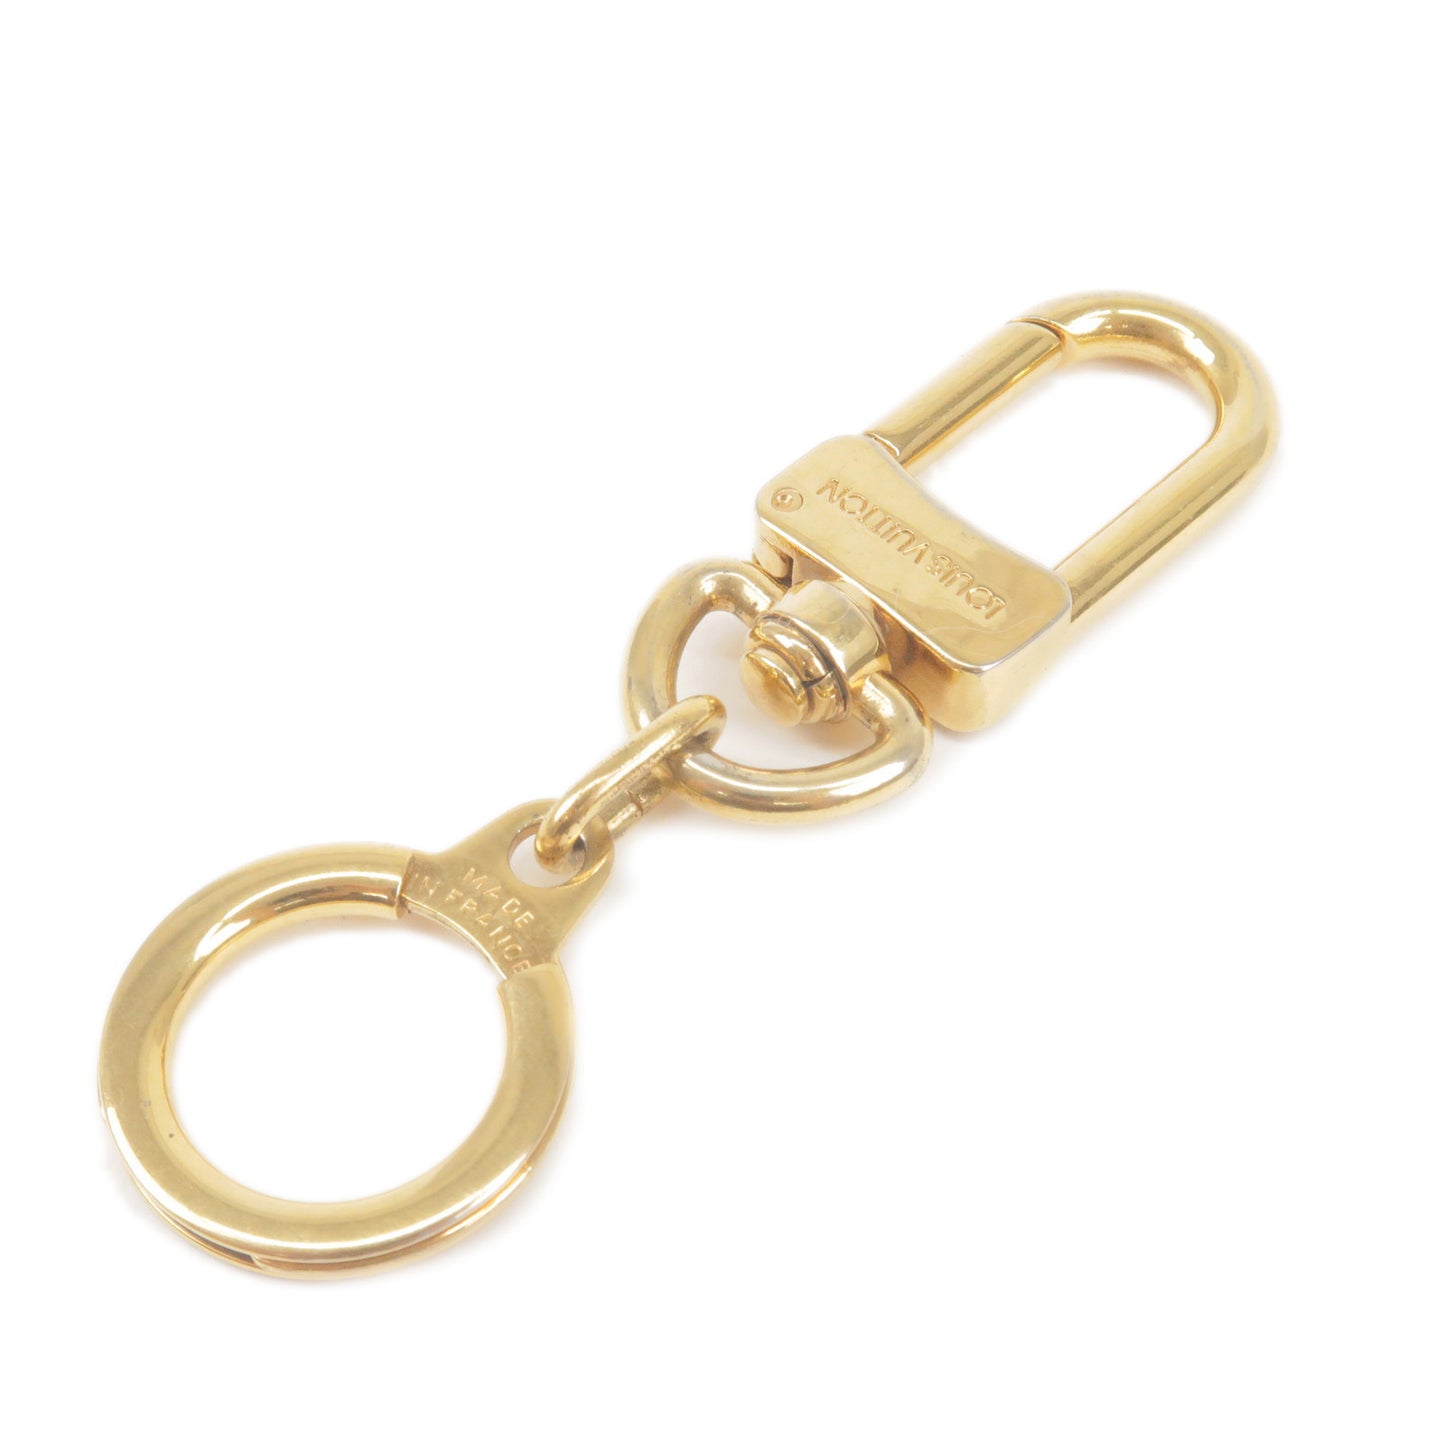 Louis-Vuitton-Ano-Cles-Key-Chain-Bag-Chram-Gold-M62694